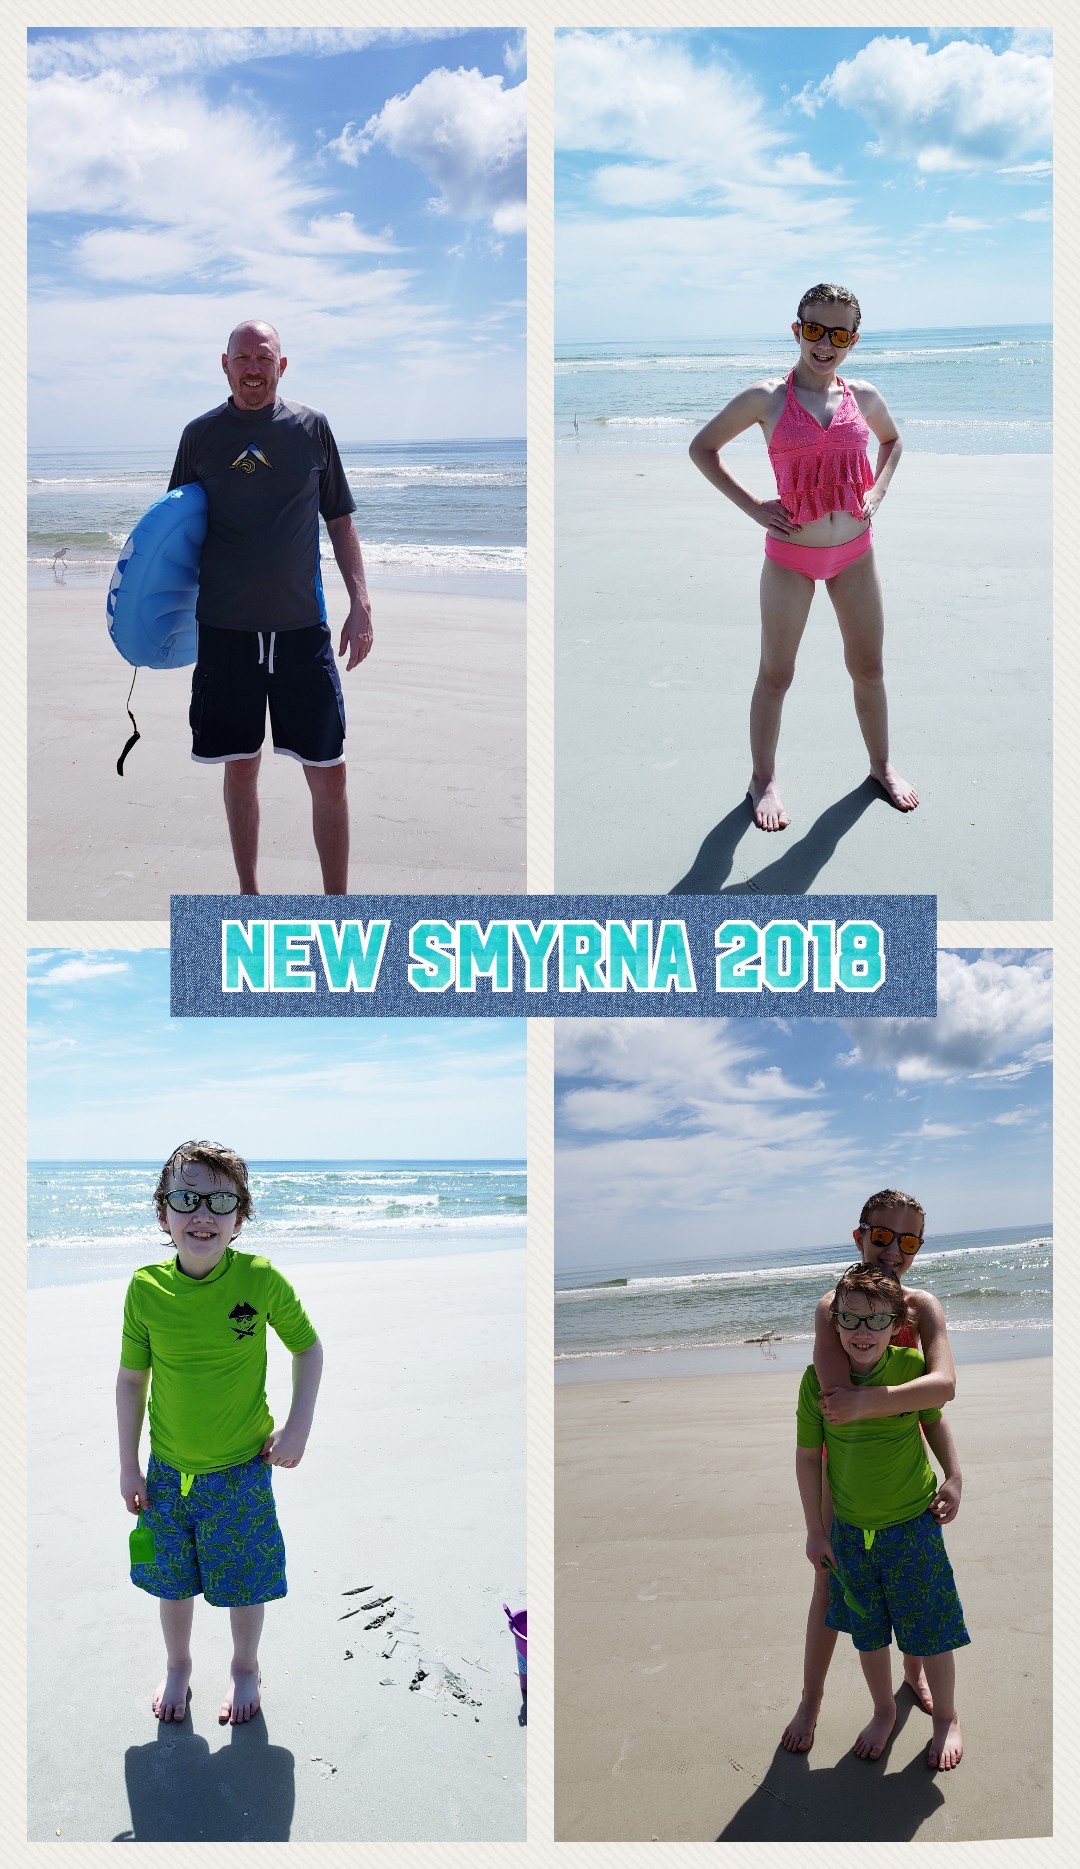 New Smyrna 2018